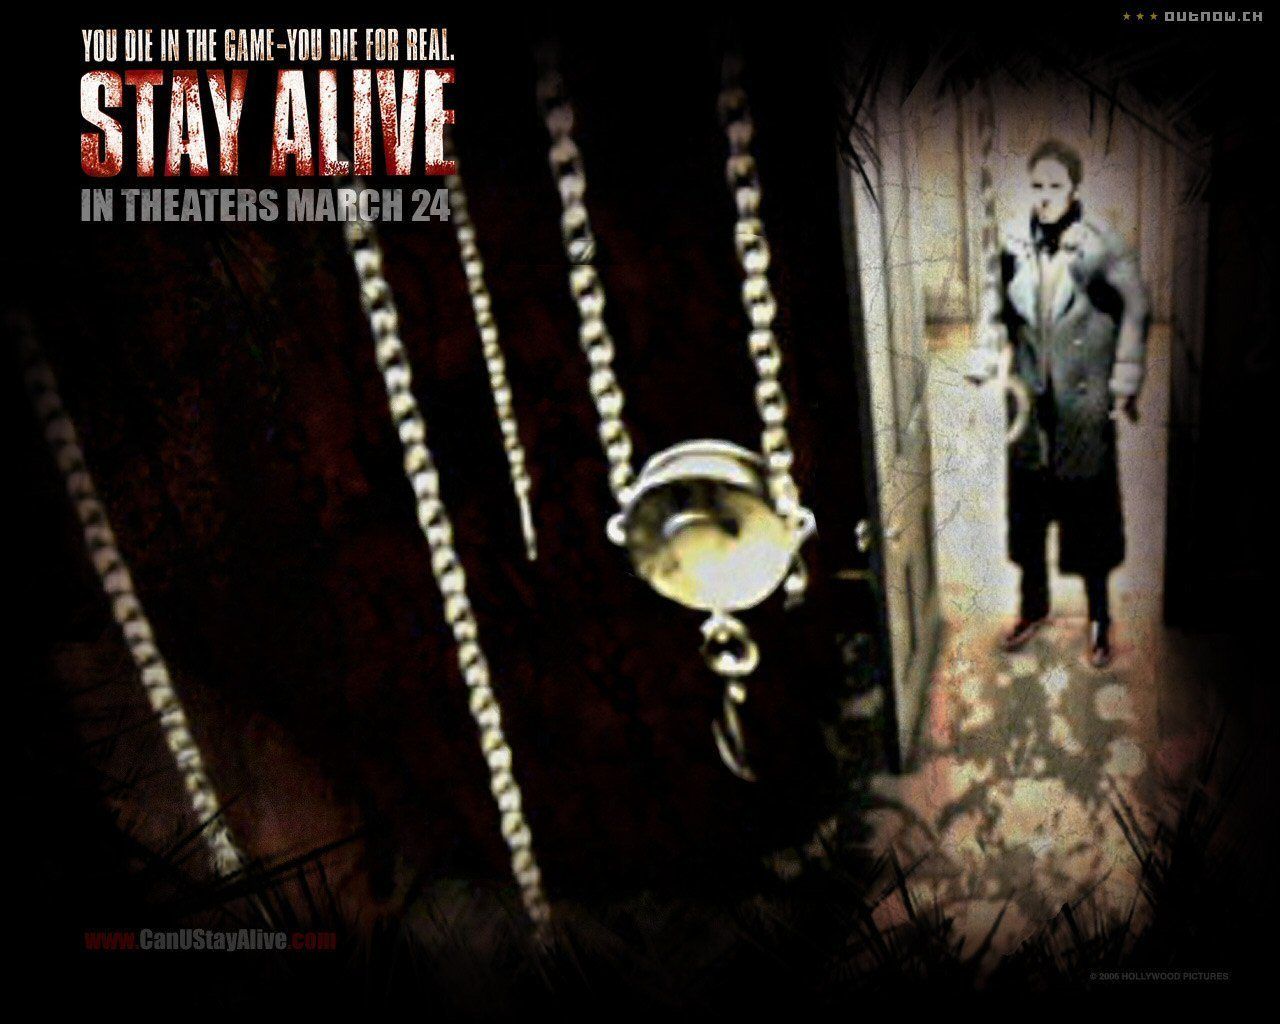 Stay Alive - Stay Alive Wallpaper (2053620) - Fanpop